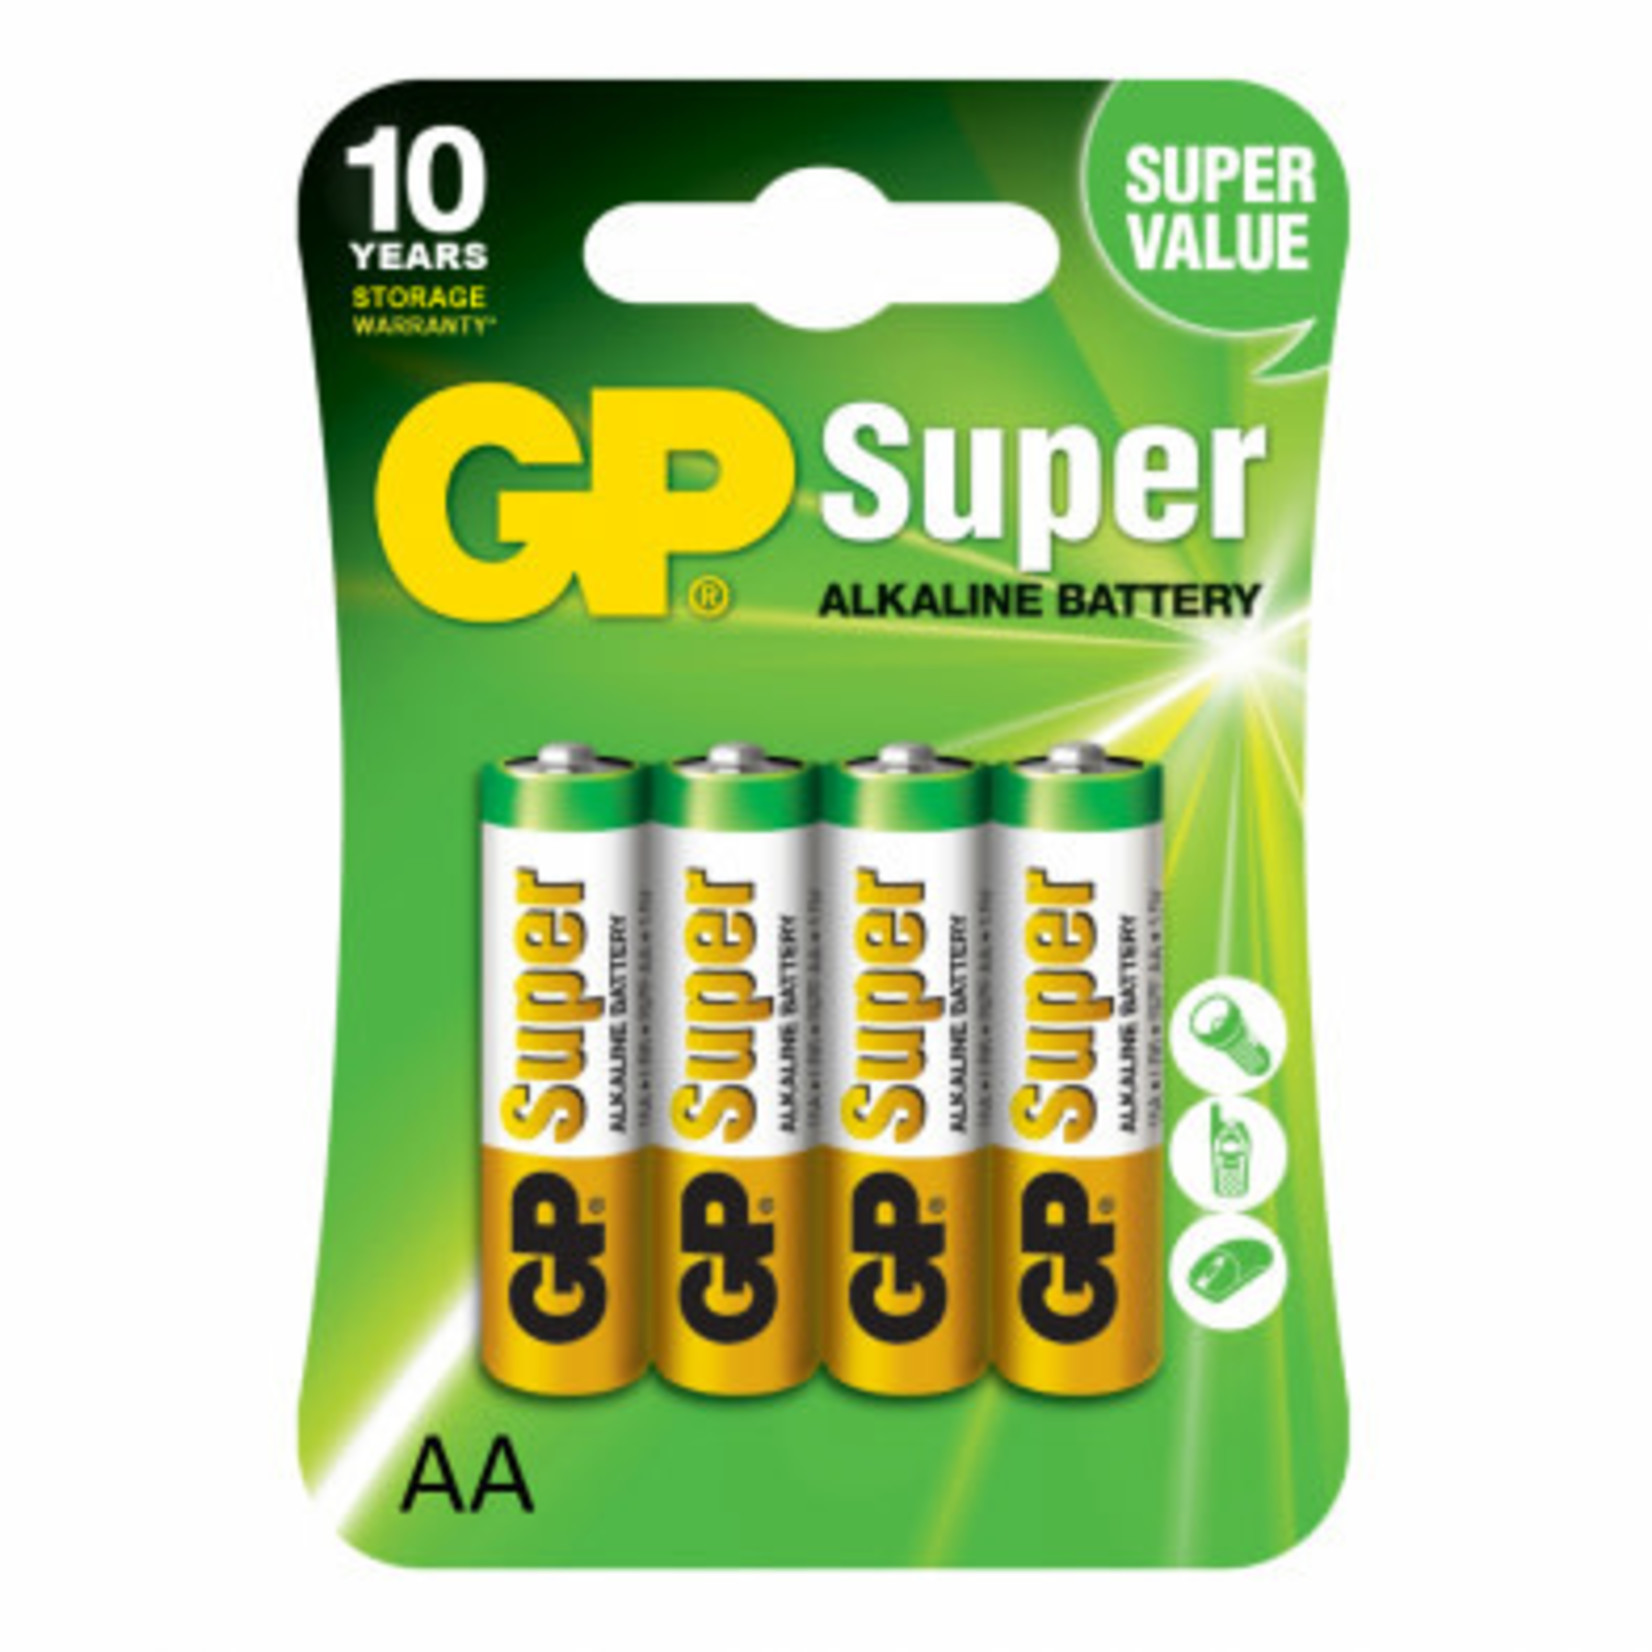 GP Super GP15A2UE4  BATT ALKALINE AA GP SUPER 10Y C/4